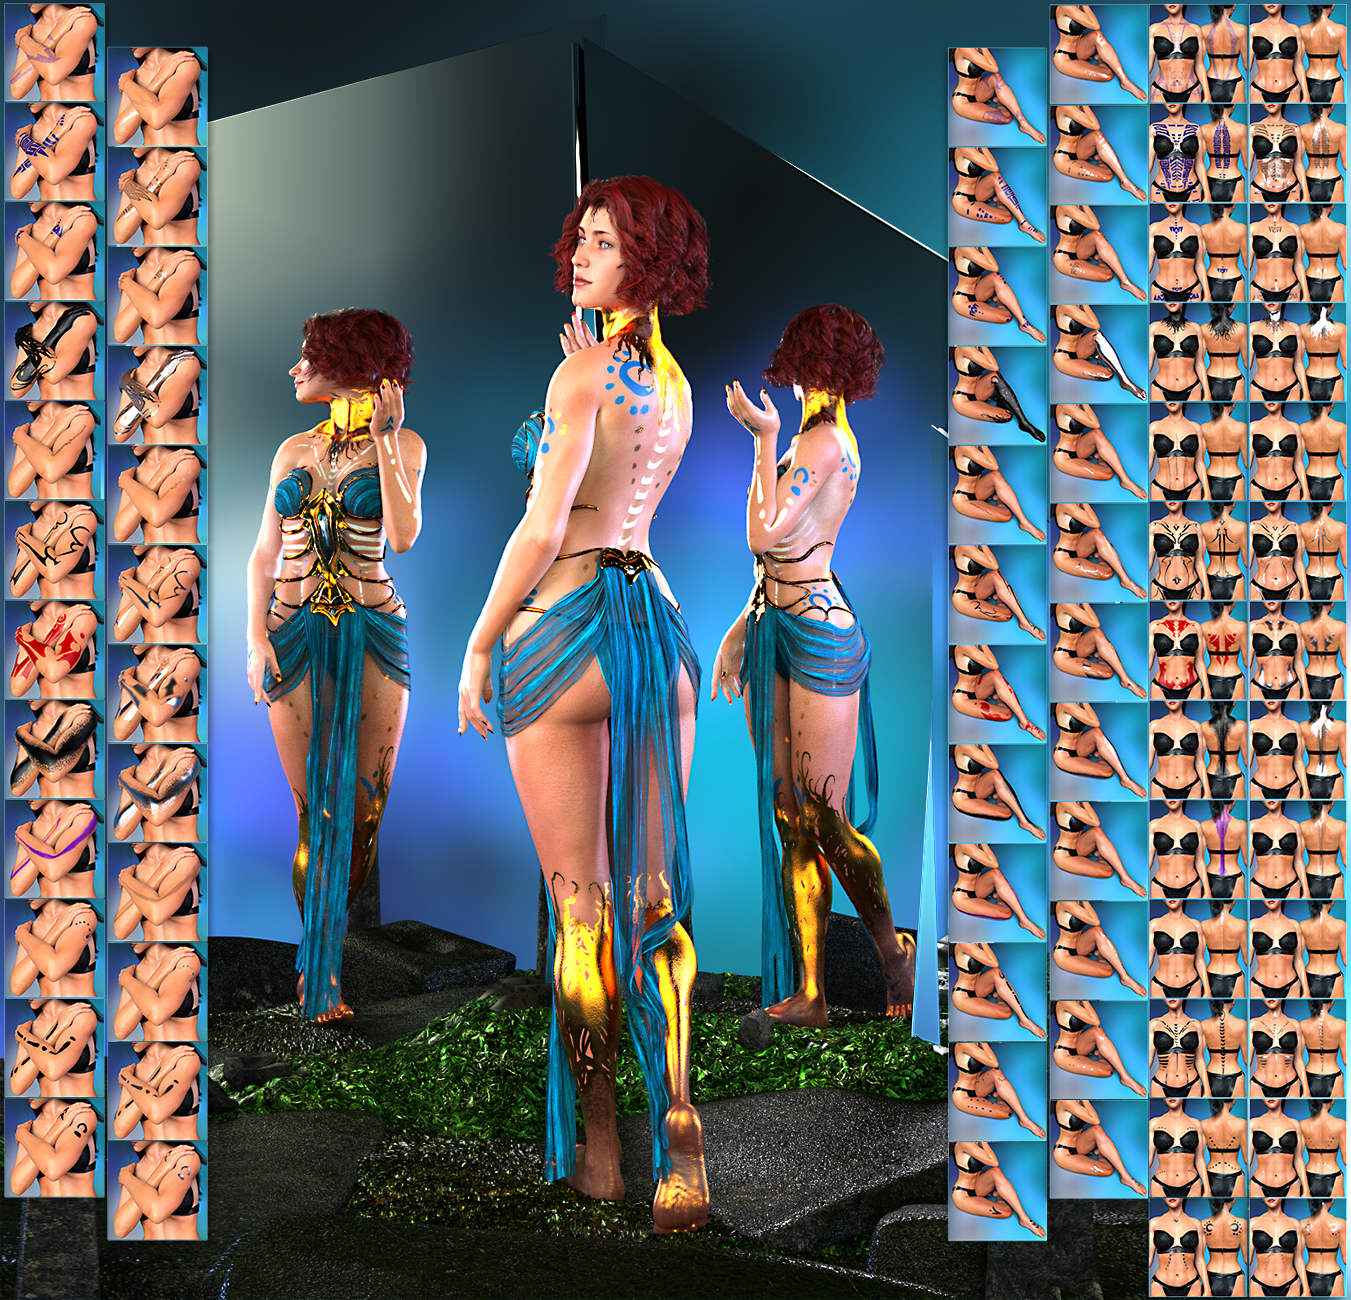 MW Ultimate Body Salon by: RiverSoft ArtArki, 3D Models by Daz 3D